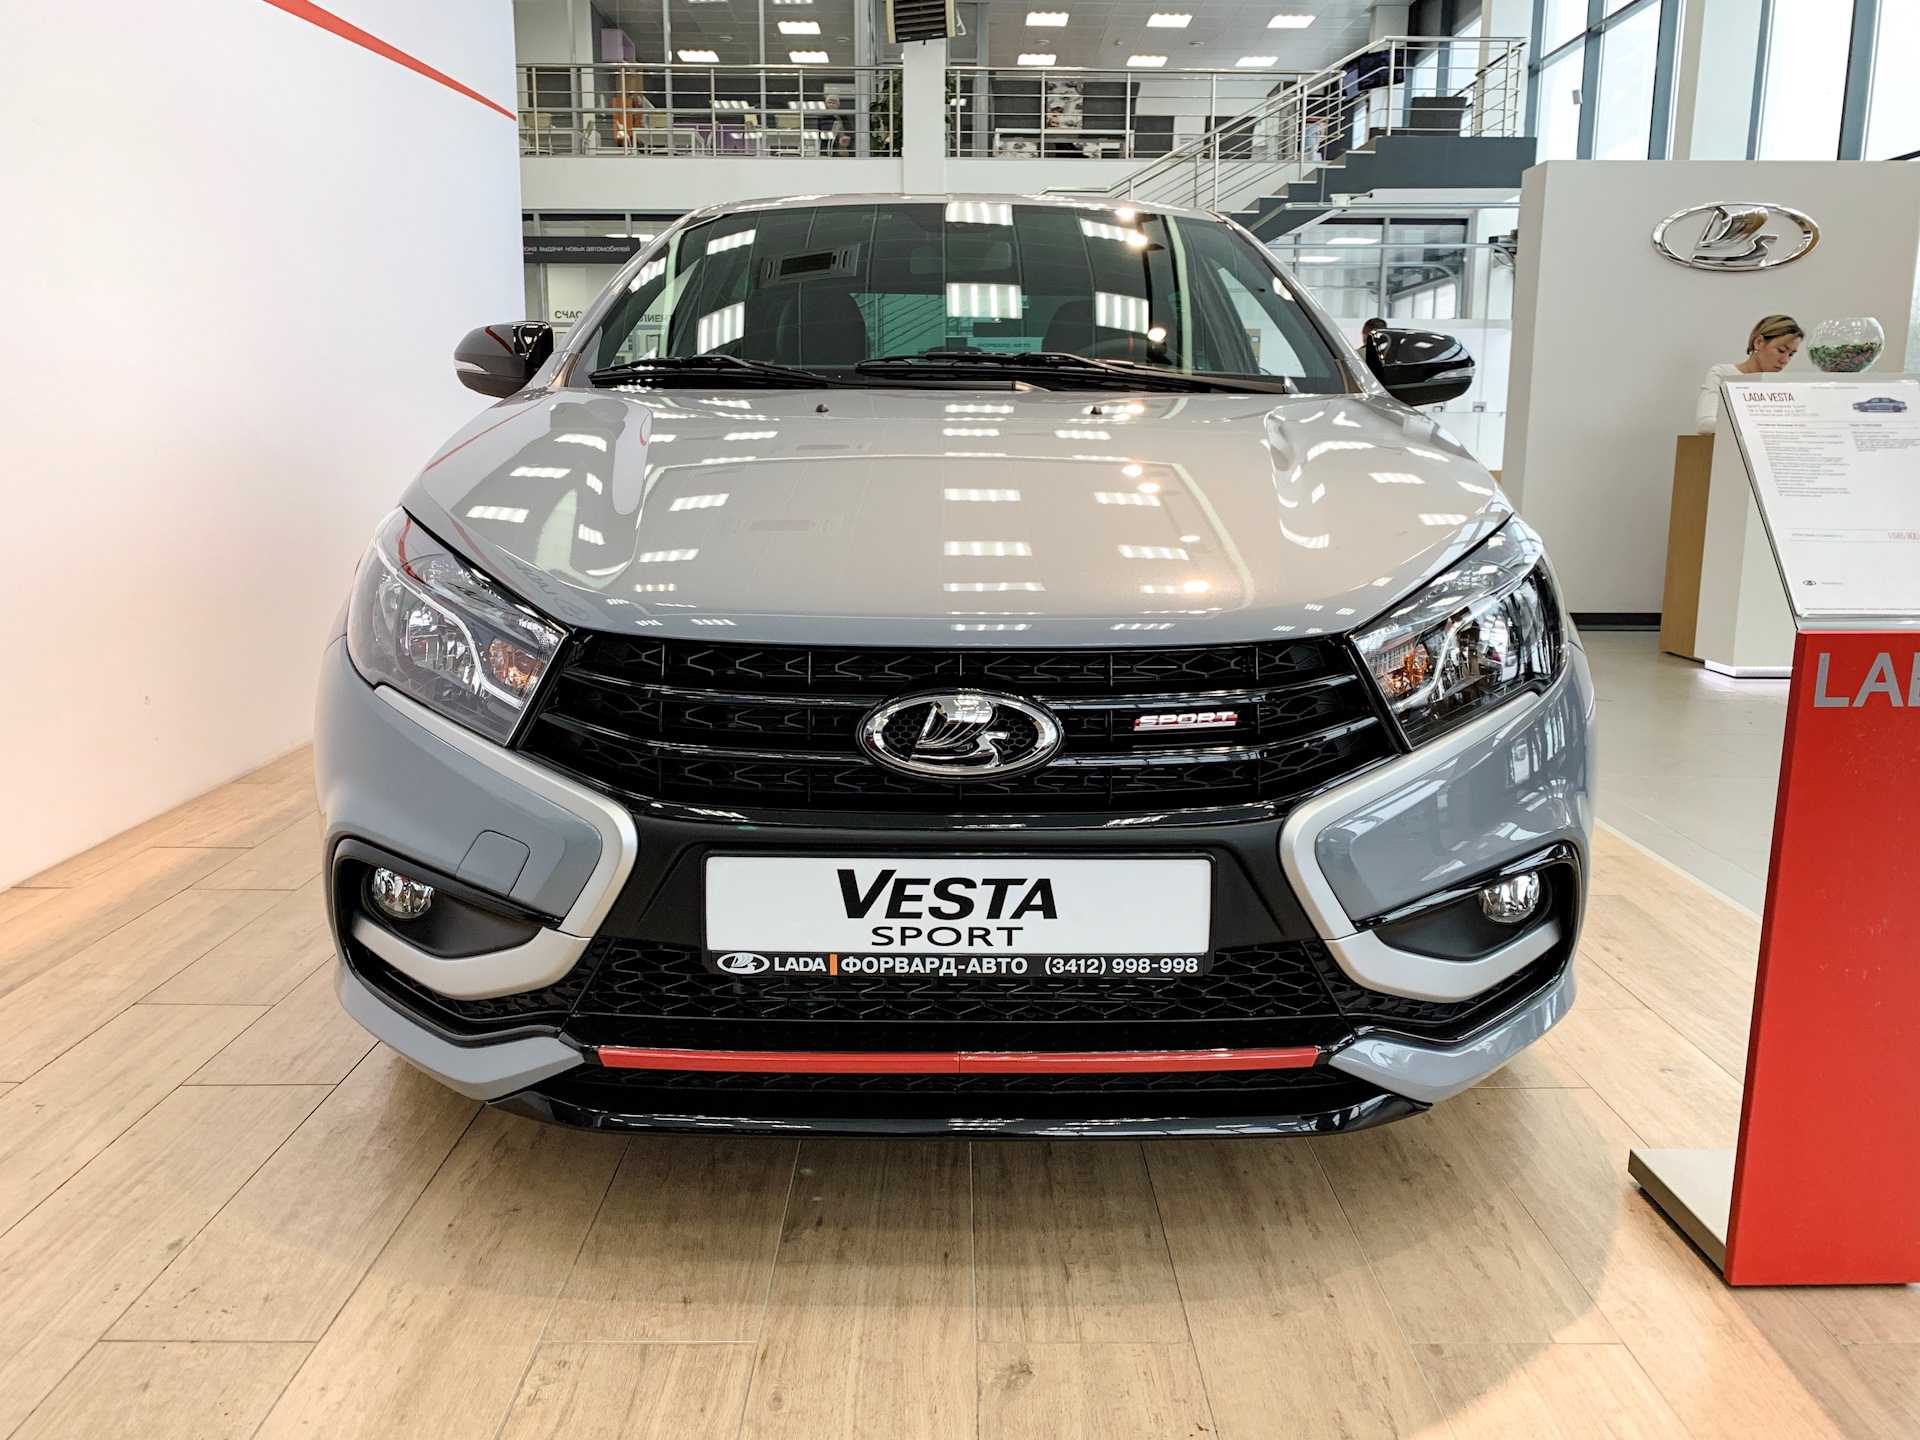 Lada vesta sport 2019 — комплектация, характеристики, особенности, что нового